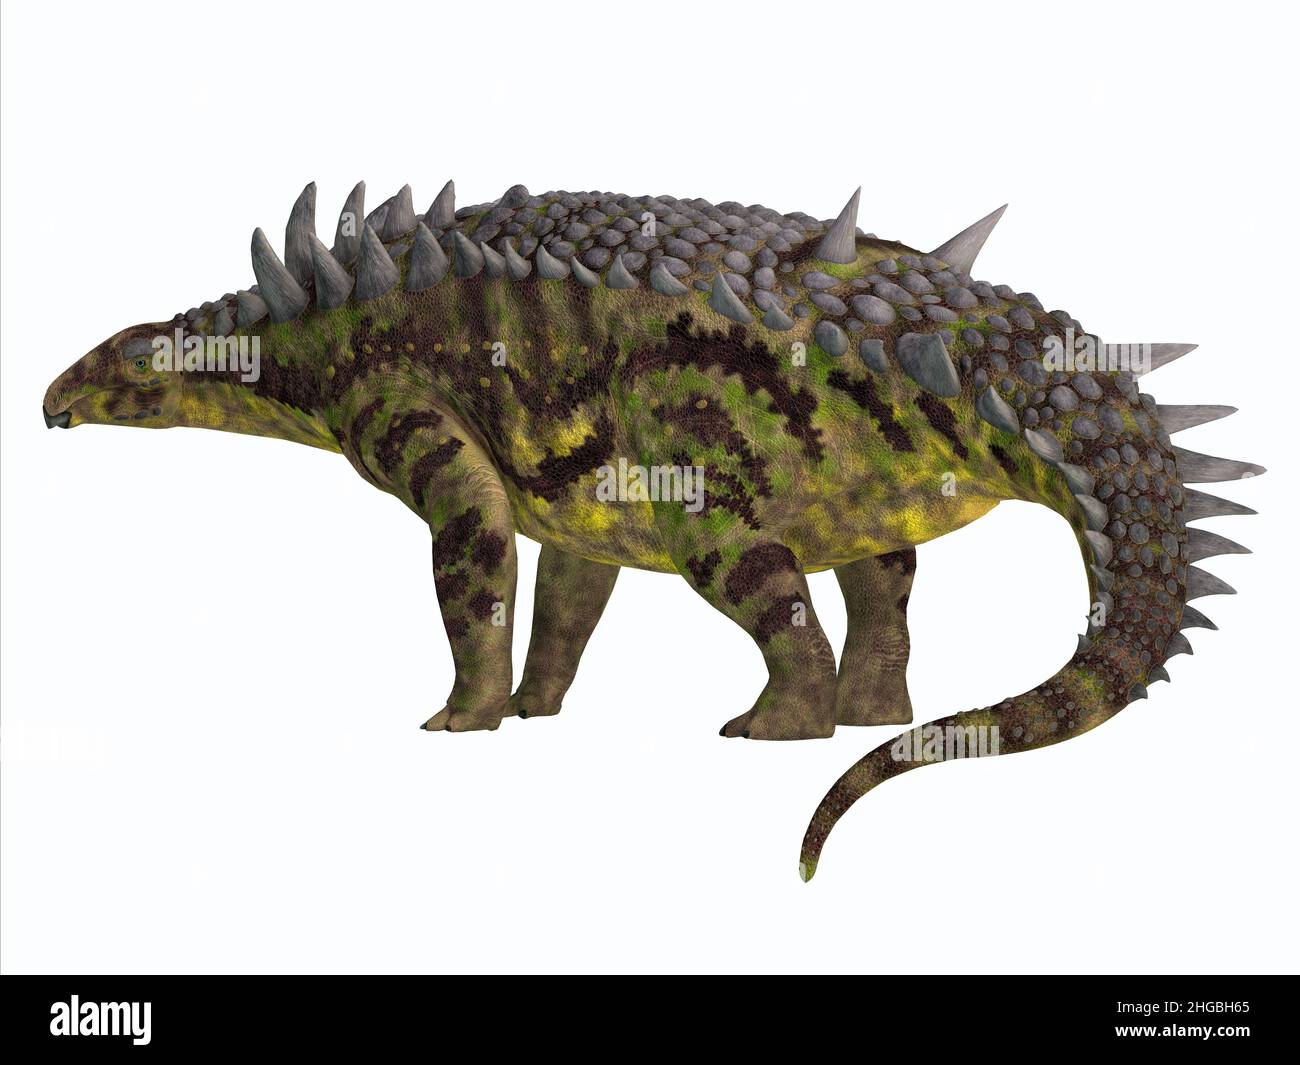 L'Hungarosaurus era un dinosauro erbivoro armorato Ankylosaurus che viveva in Ungheria durante il periodo cretaceo. Foto Stock